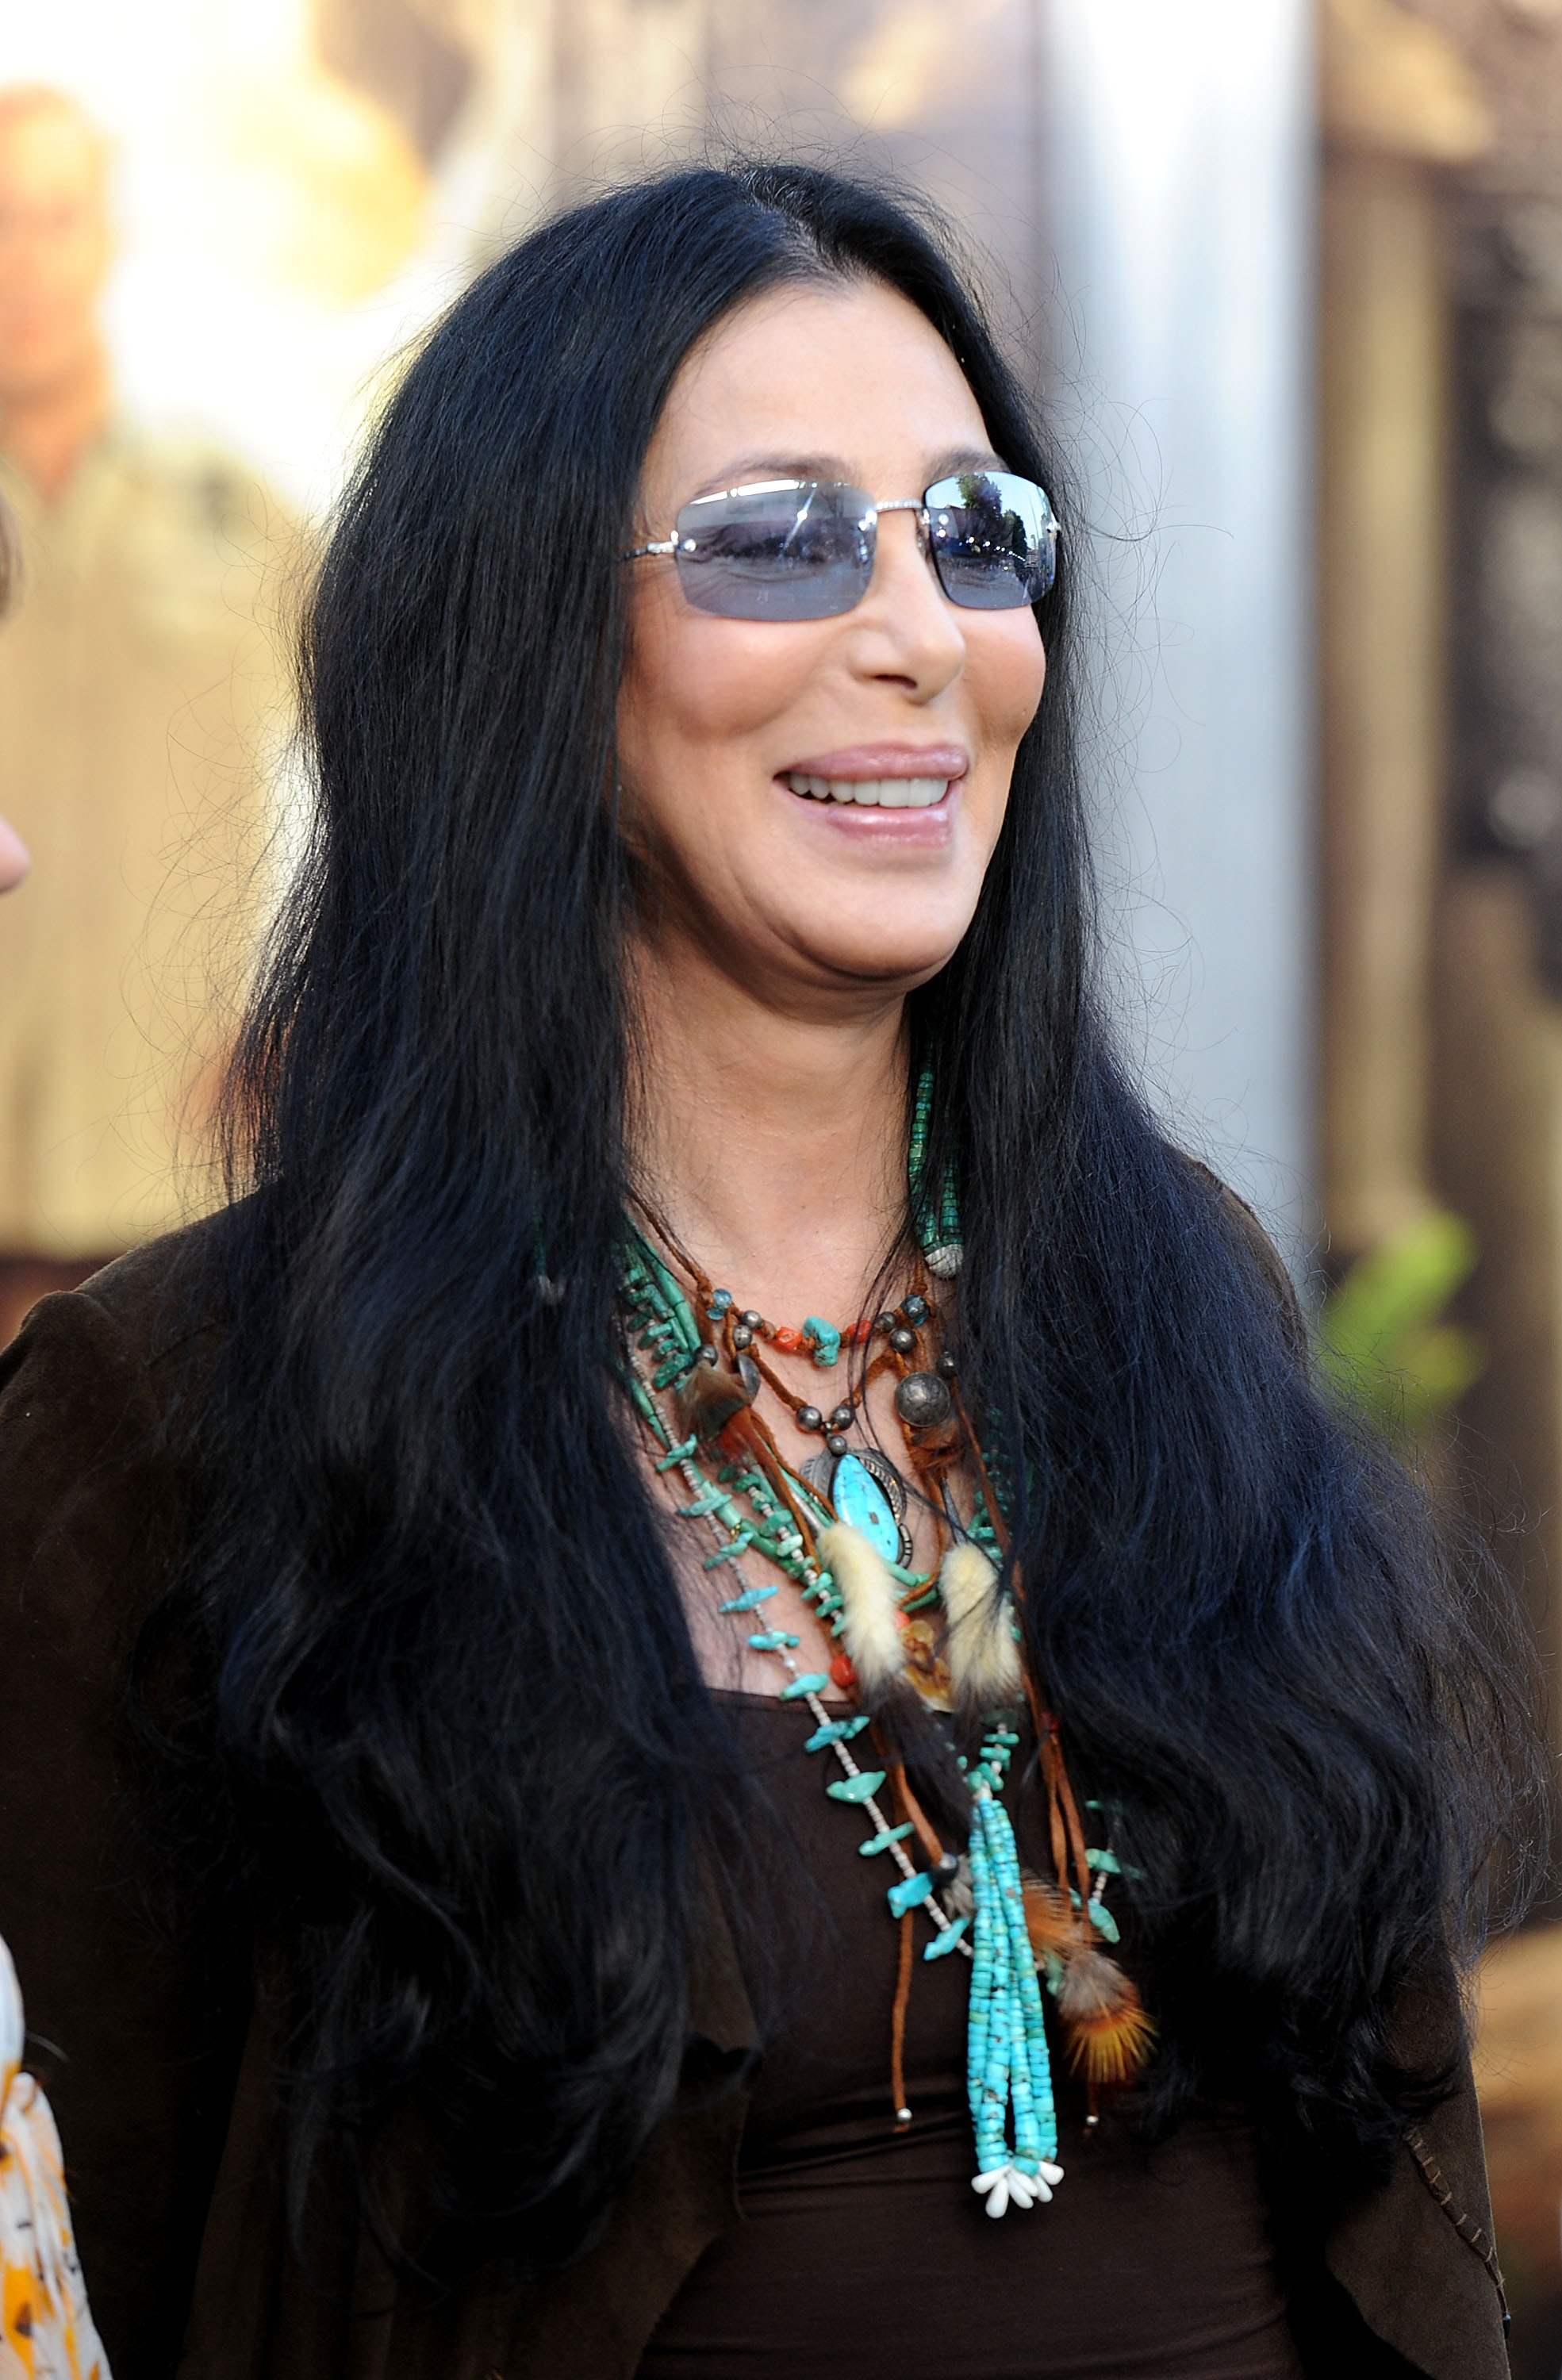 Cher arrive à la première de "The Zookeeper" au Regency Village Theater, Westwood, le 6 juillet 2011, à Los Angeles, en Californie. | Source : Getty Images